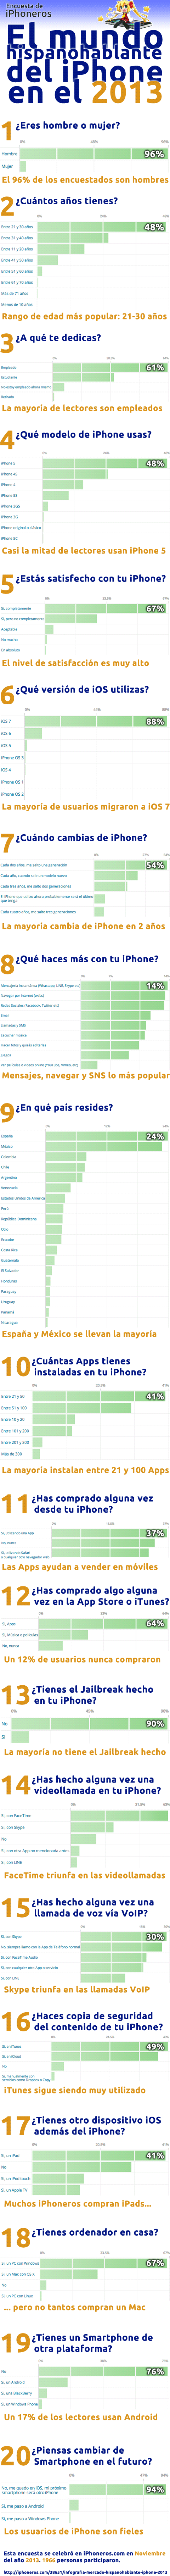 Infografía del mundo hispanohablante del iPhone 2013